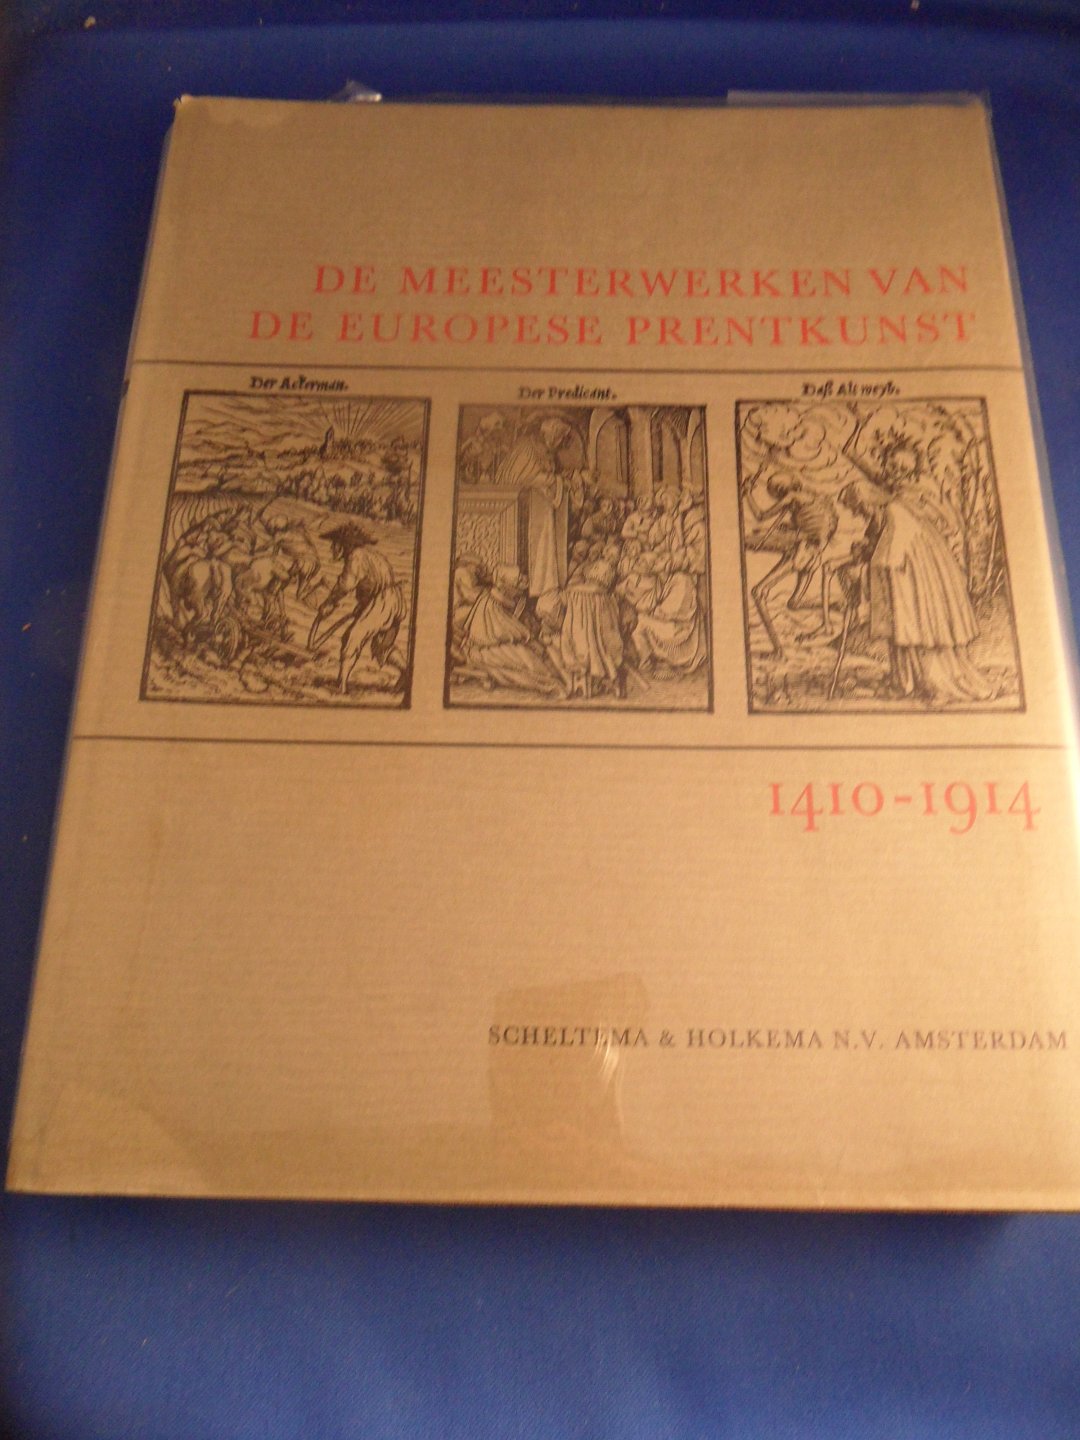 Boon, K.G. (inleiding) - De meesterwerken van de Europese prentkunst 1410-1914